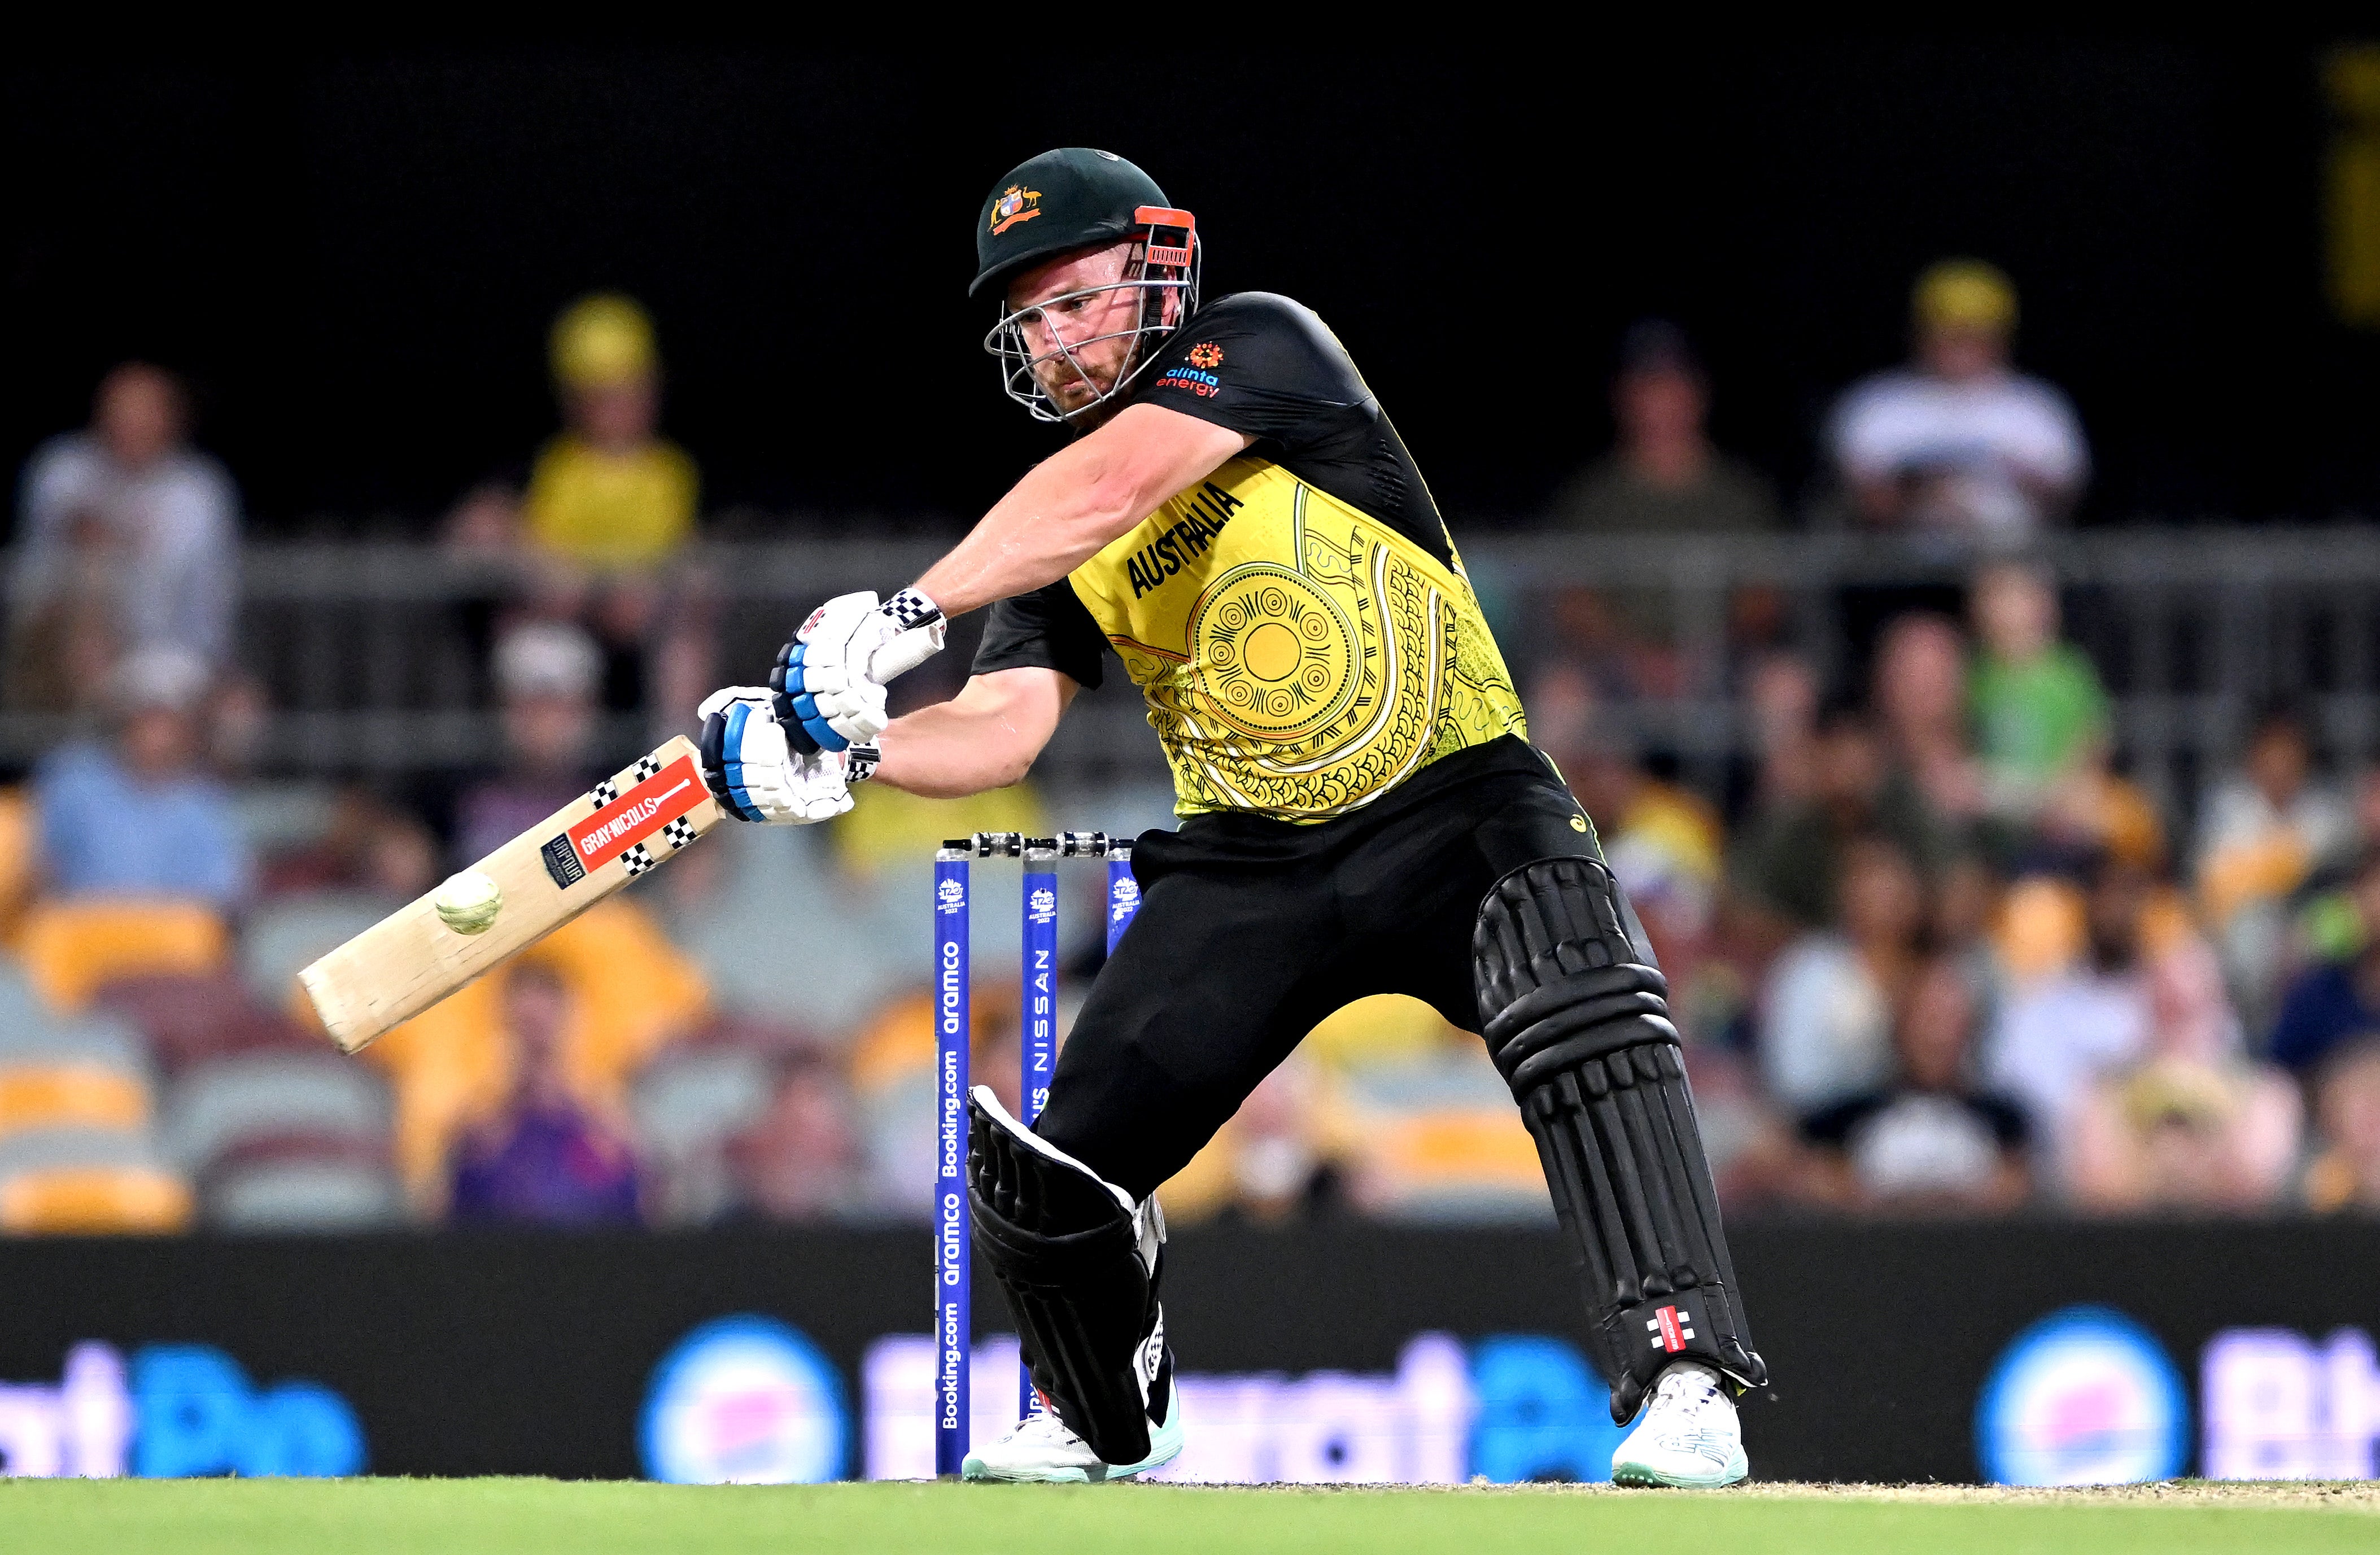 Finch hit 63 off 44 balls in Brisbane